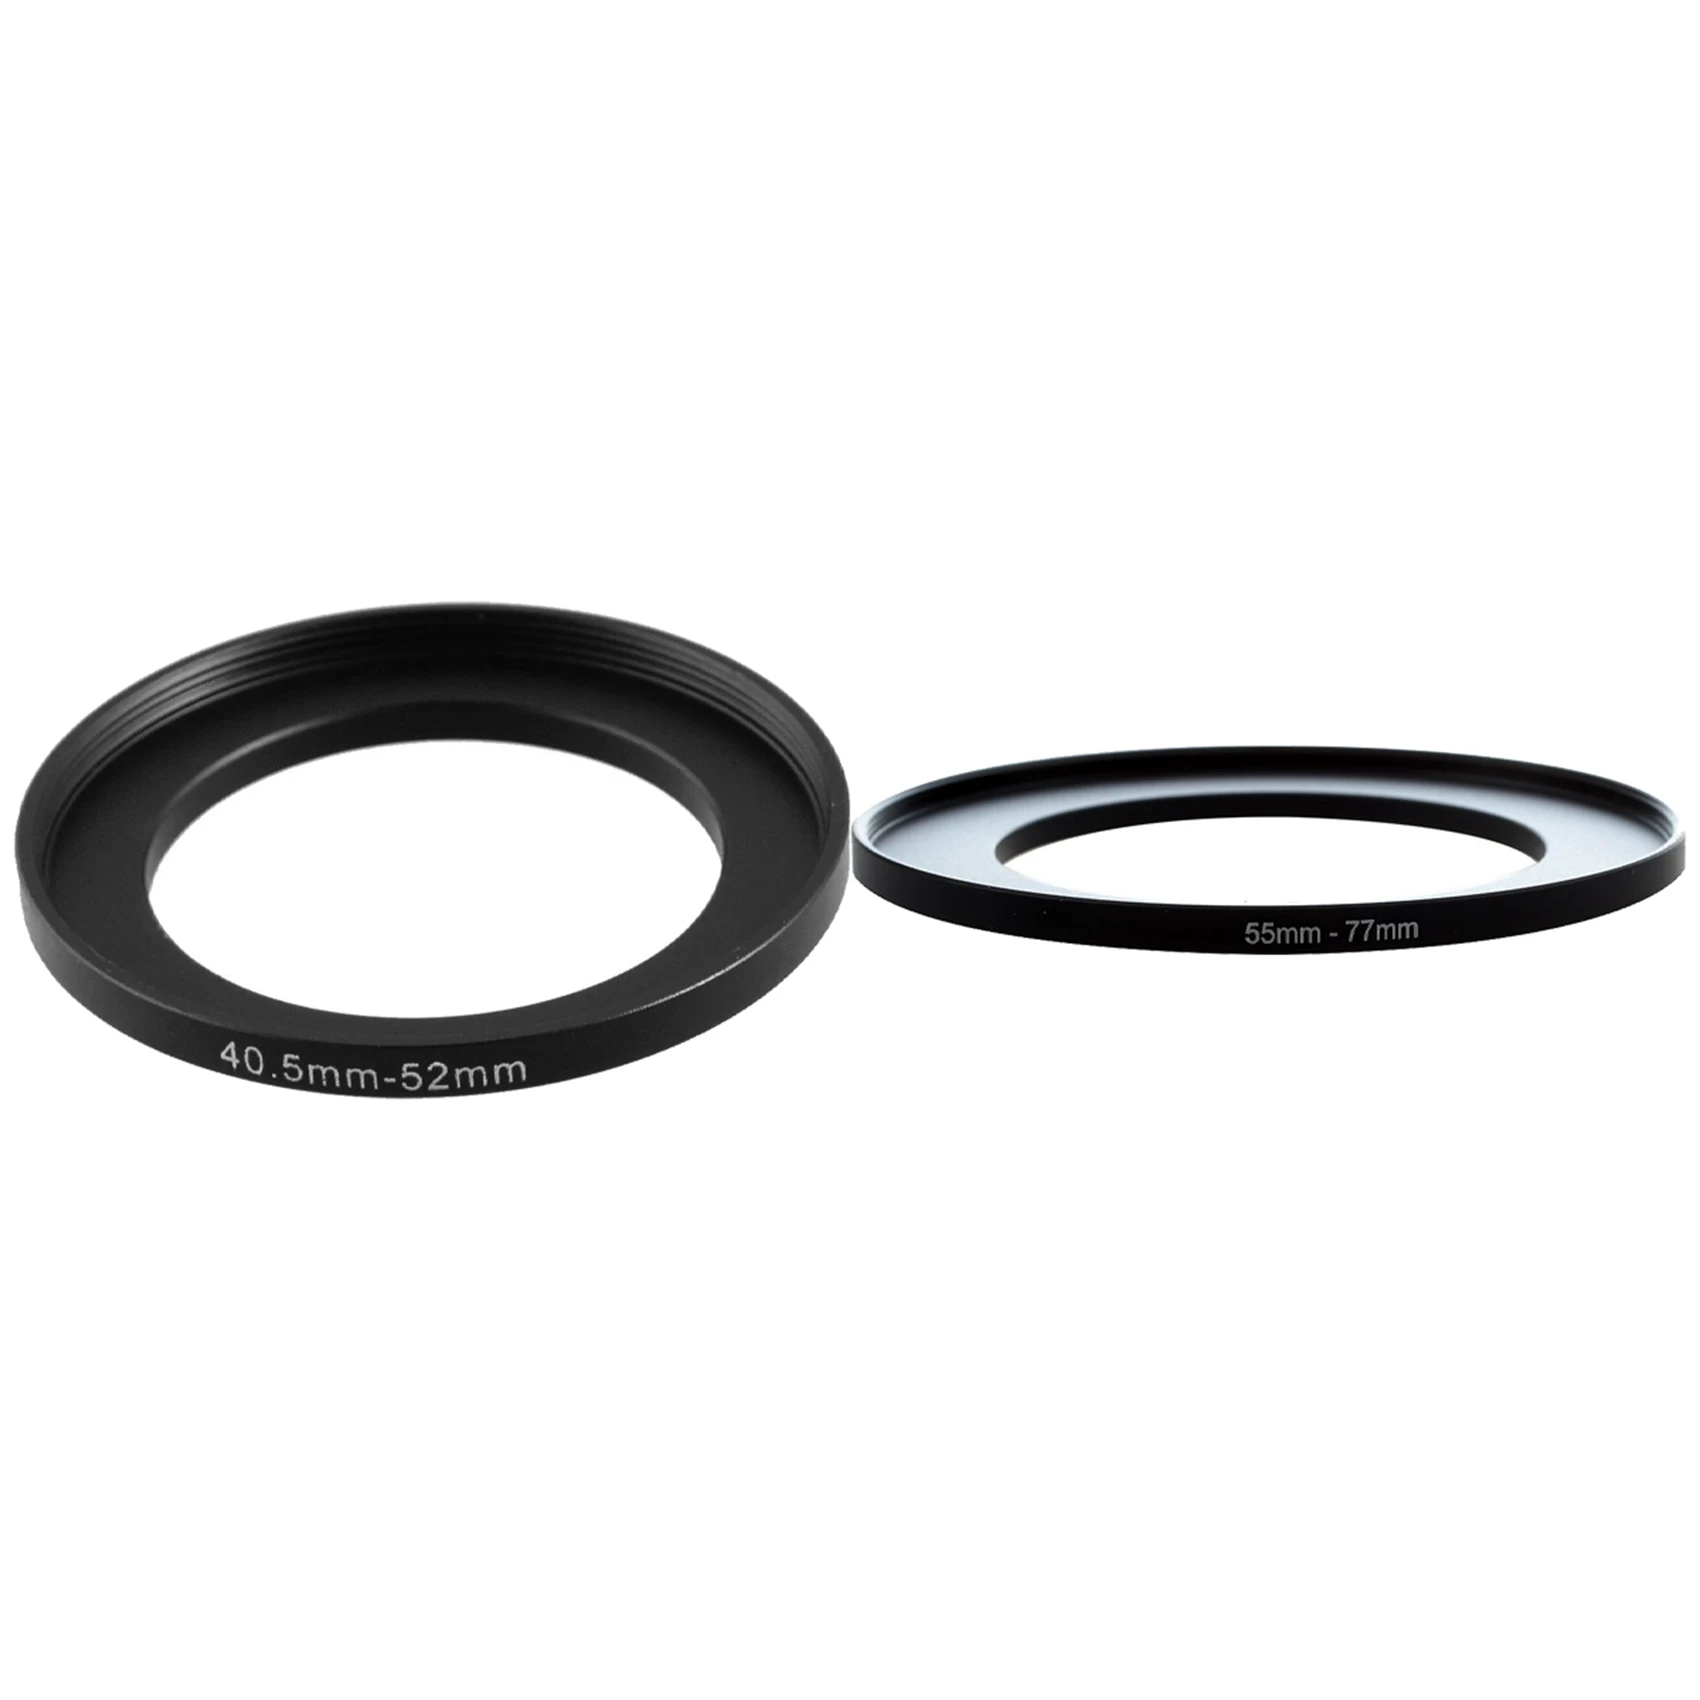 Переходное кольцо с металлическим фильтром из 2 предметов для камеры, 40,5-52 мм и 55-77 мм